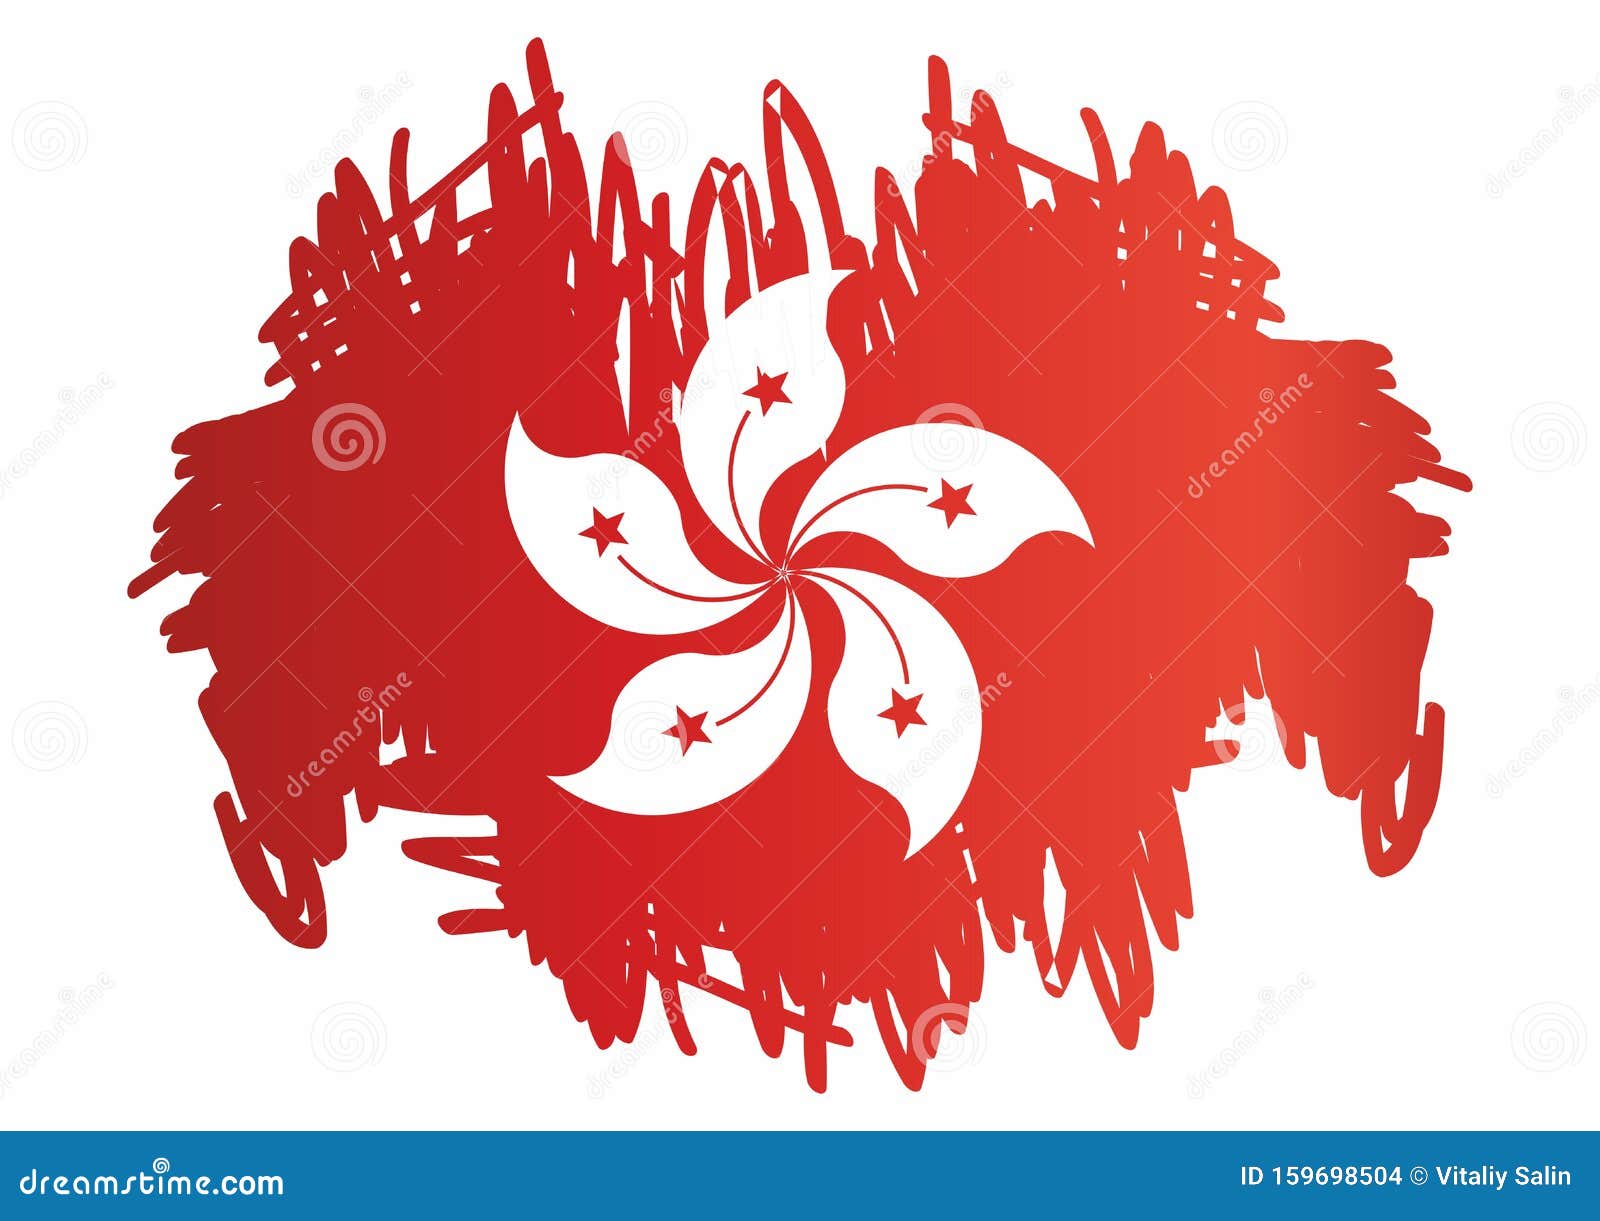 中华人民共和国香港特别行政区国旗奖品设计模板 正式文档向量例证 插画包括有